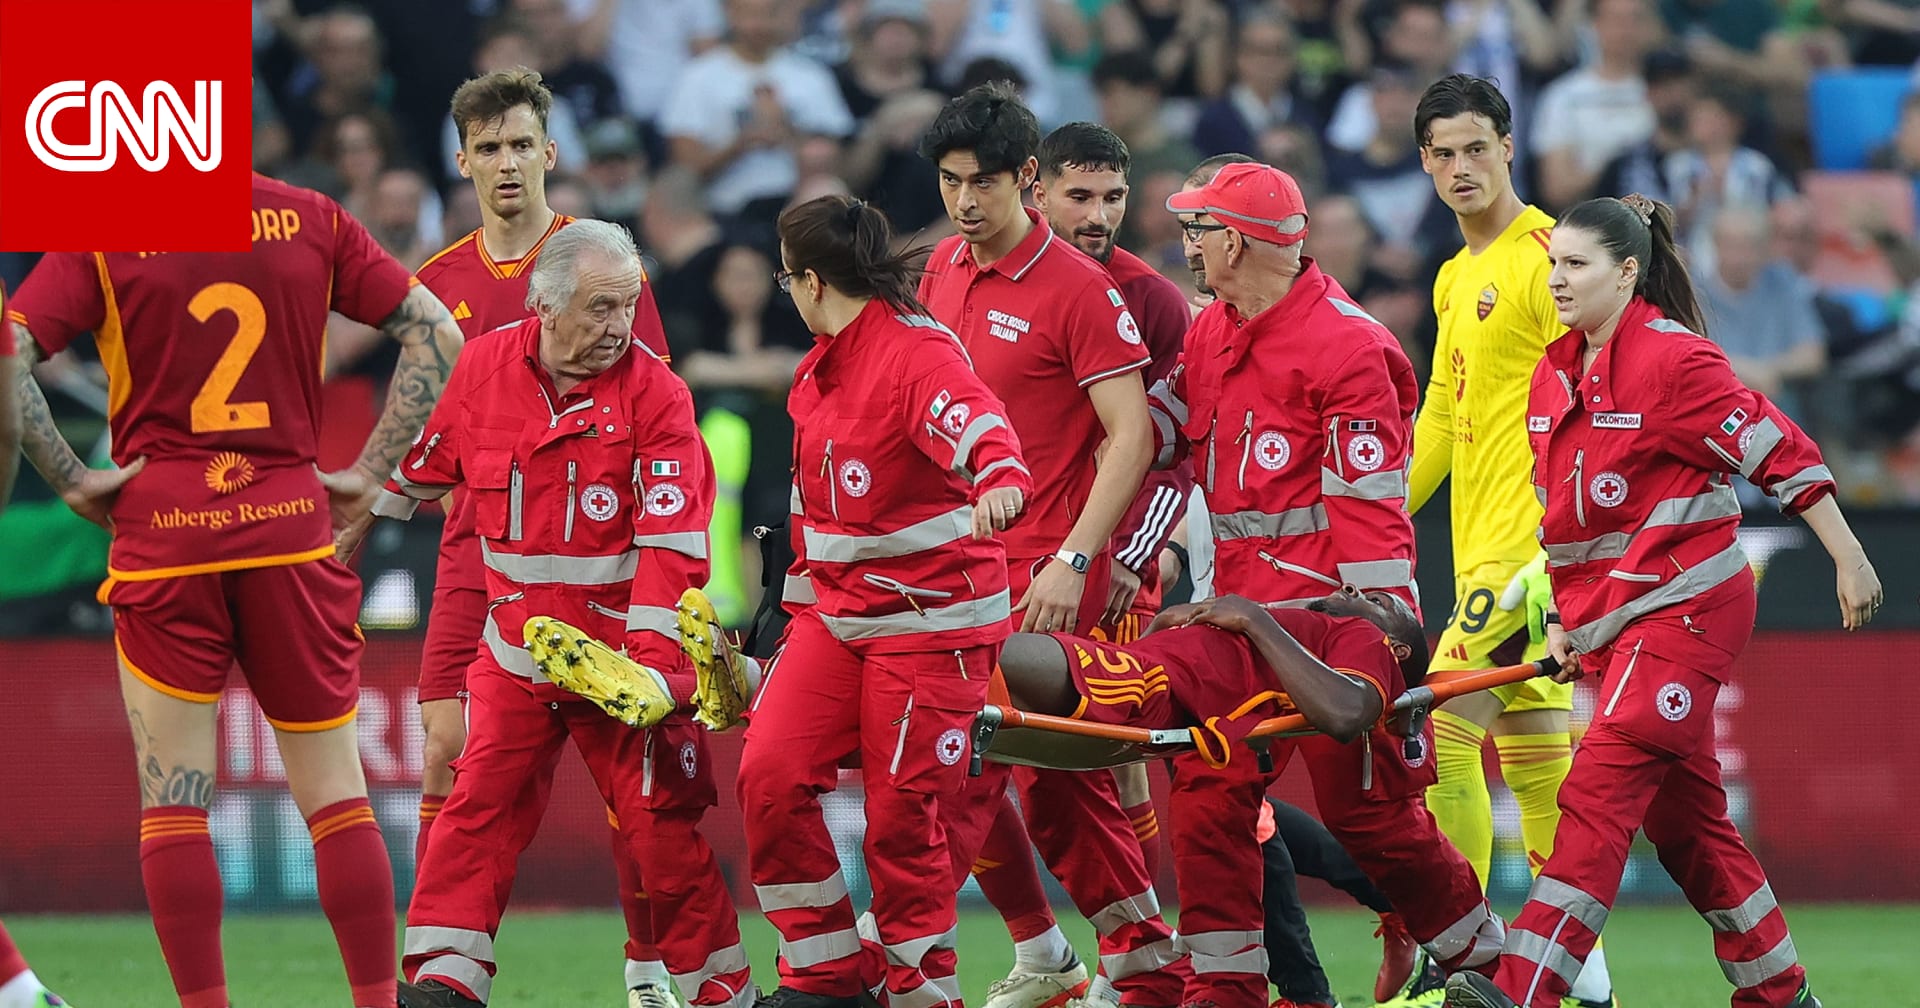 شعر اللاعبون والمدربون بالذعر.. إصابة خطرة لمدافع روما تتسبب بإيقاف مباراة ضمن الدوري الإيطالي